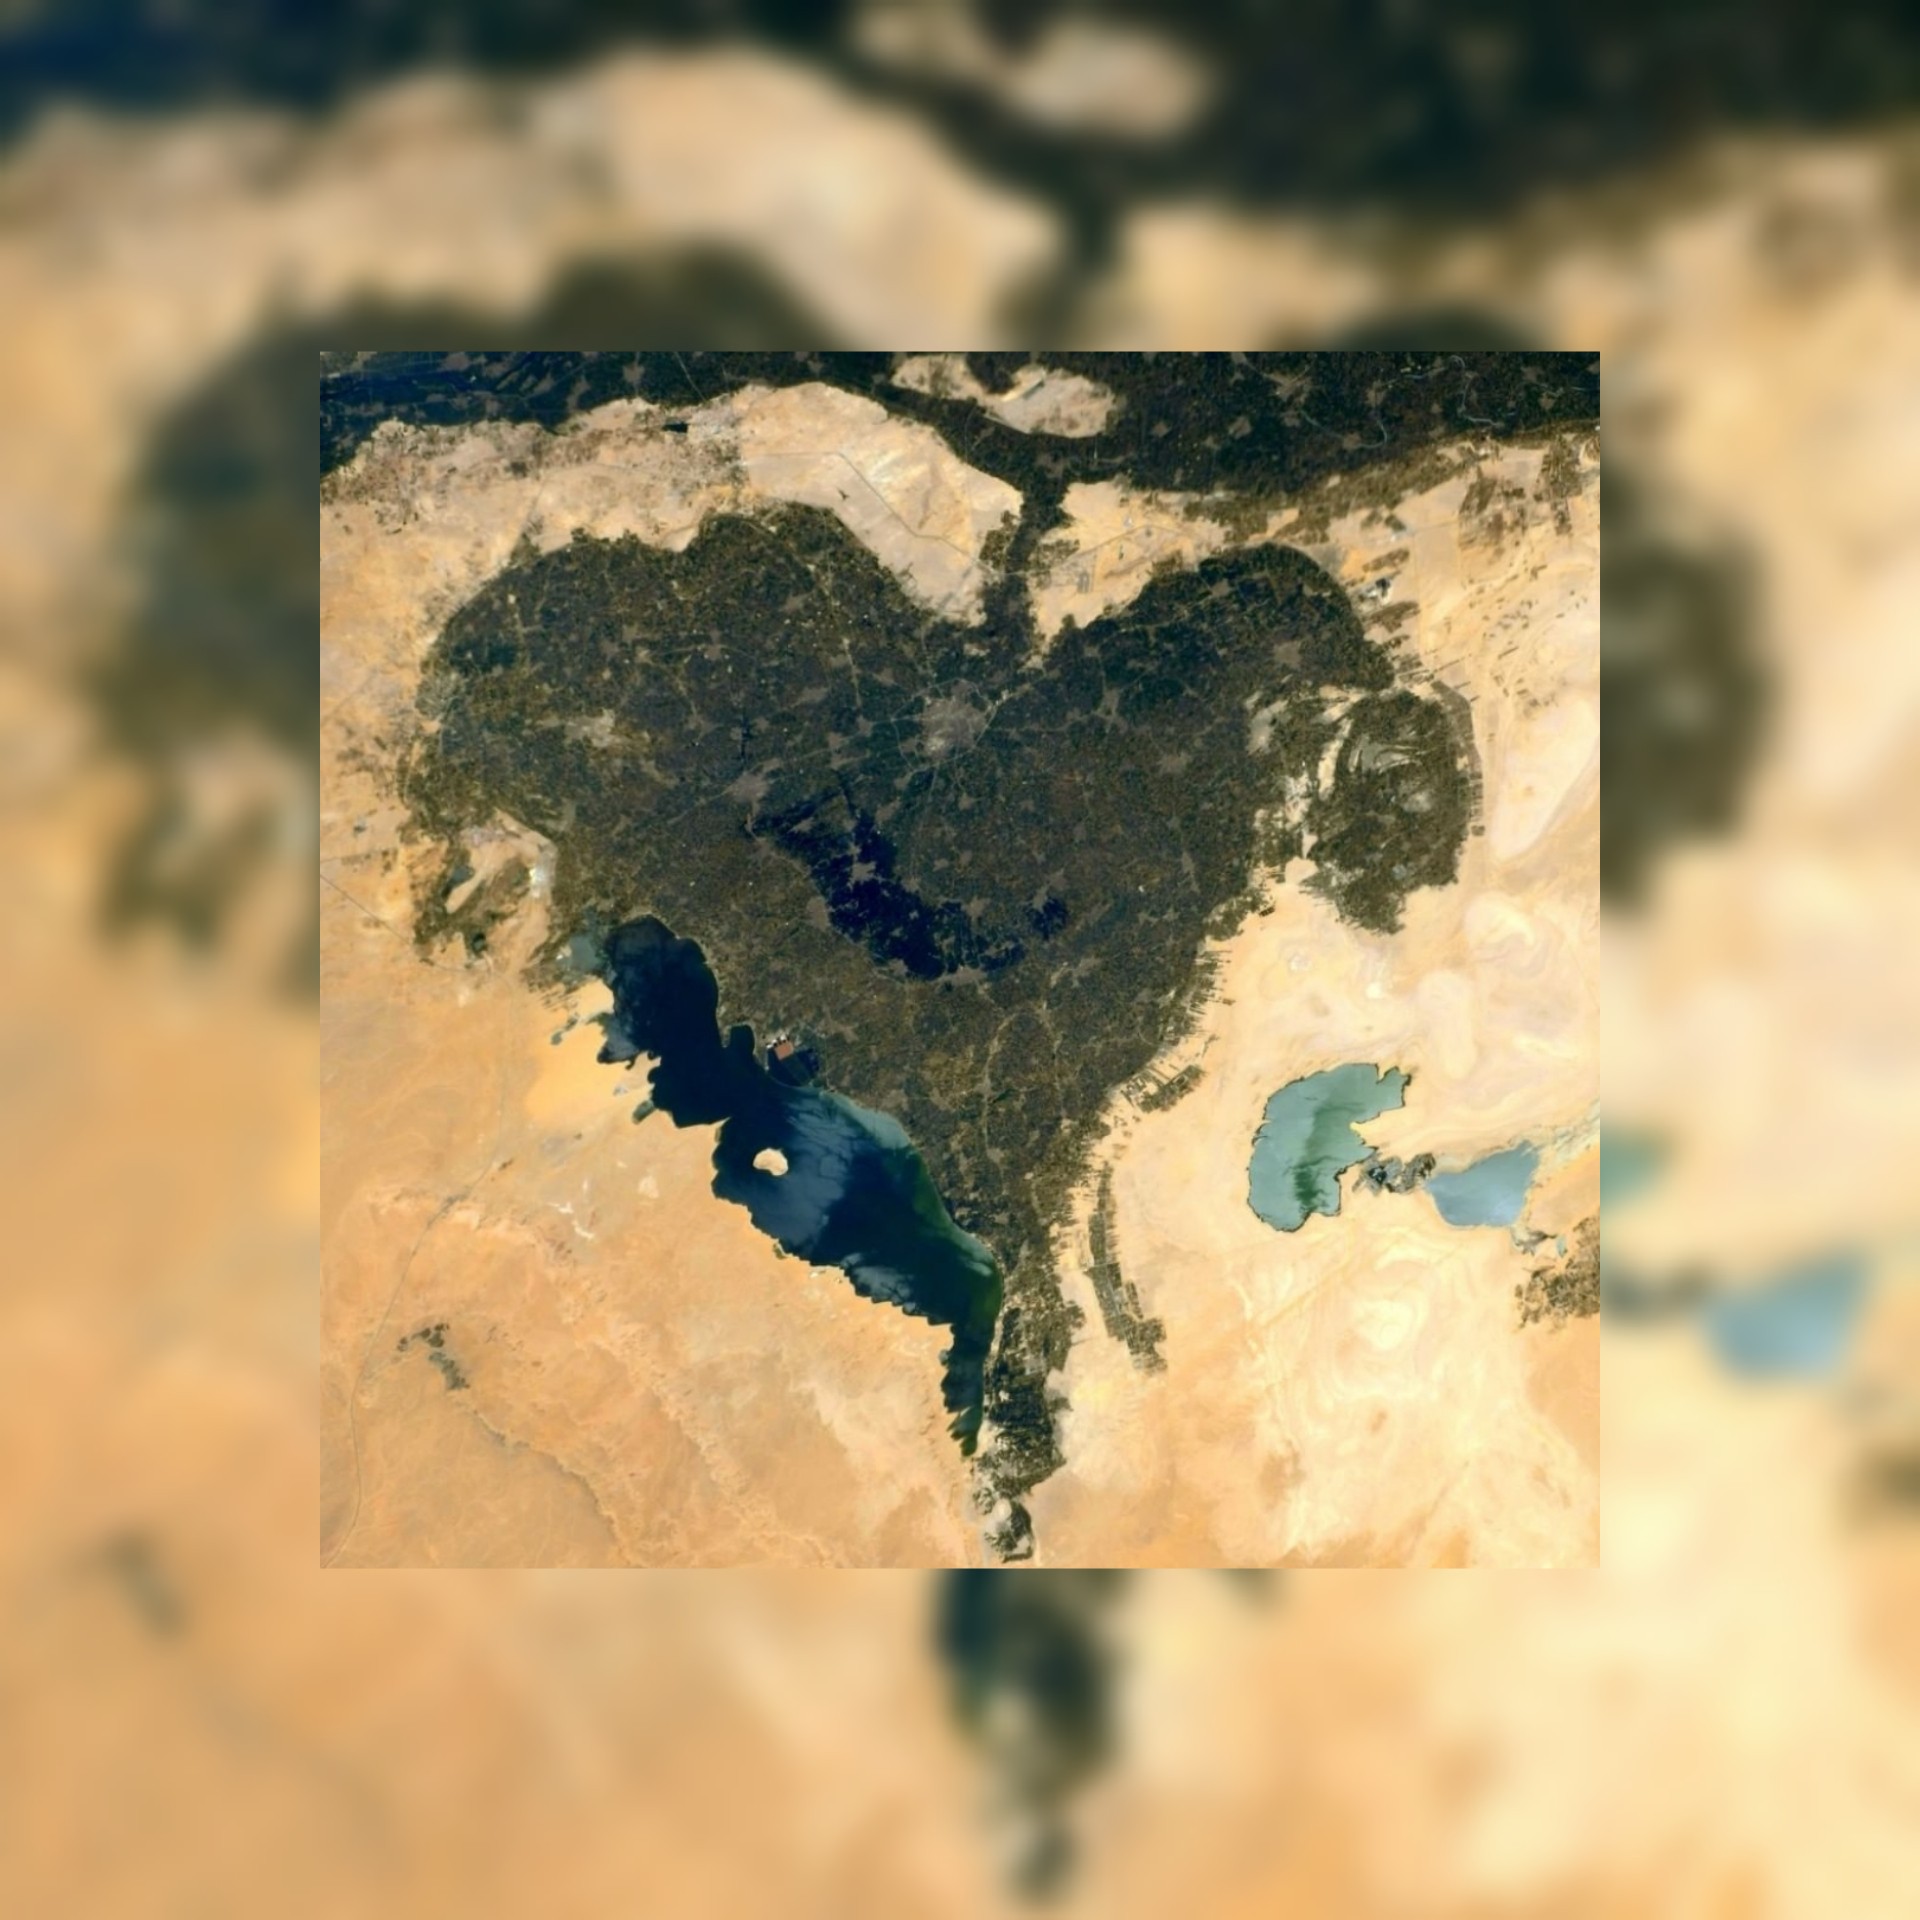 بالصور / رائد فضاء ينشر صورة لمحافظة الفيوم بمصر على شكل قلب.. ويهديها لوالدته